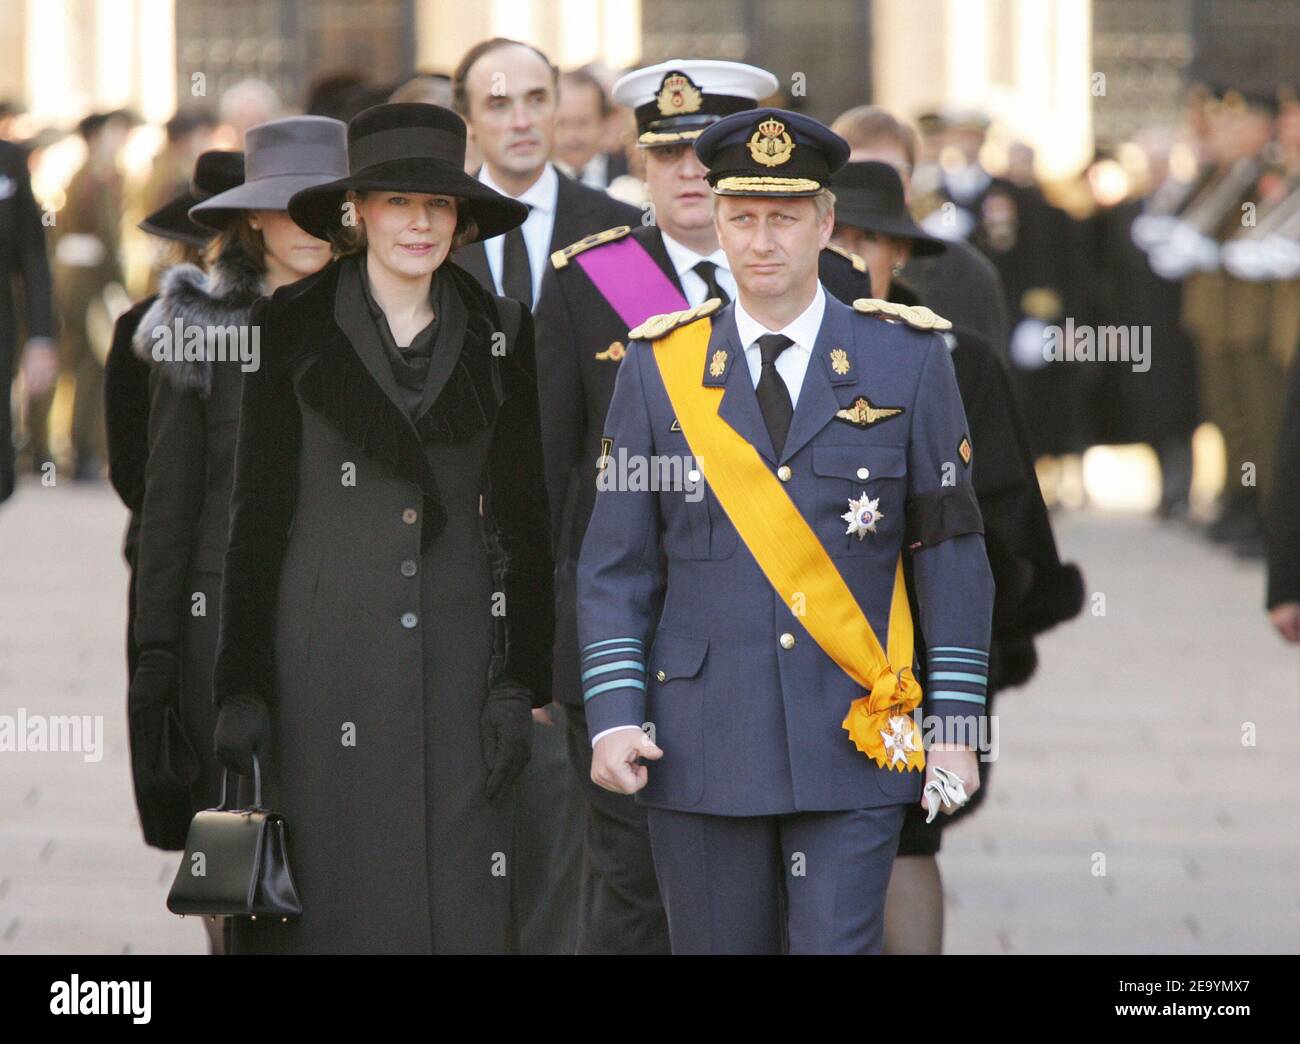 El Príncipe Felipe y la Princesa Mathilde de Bélgica asisten al funeral de la Gran Duquesa Charlotte de Luxemburgo en Luxemburgo el 15 de enero de 2005. La Gran Duquesa murió de cáncer de pulmón a los 77 años, el 10 de enero de 2005. Foto de Klein-Nebinger/ABACA. Foto de stock